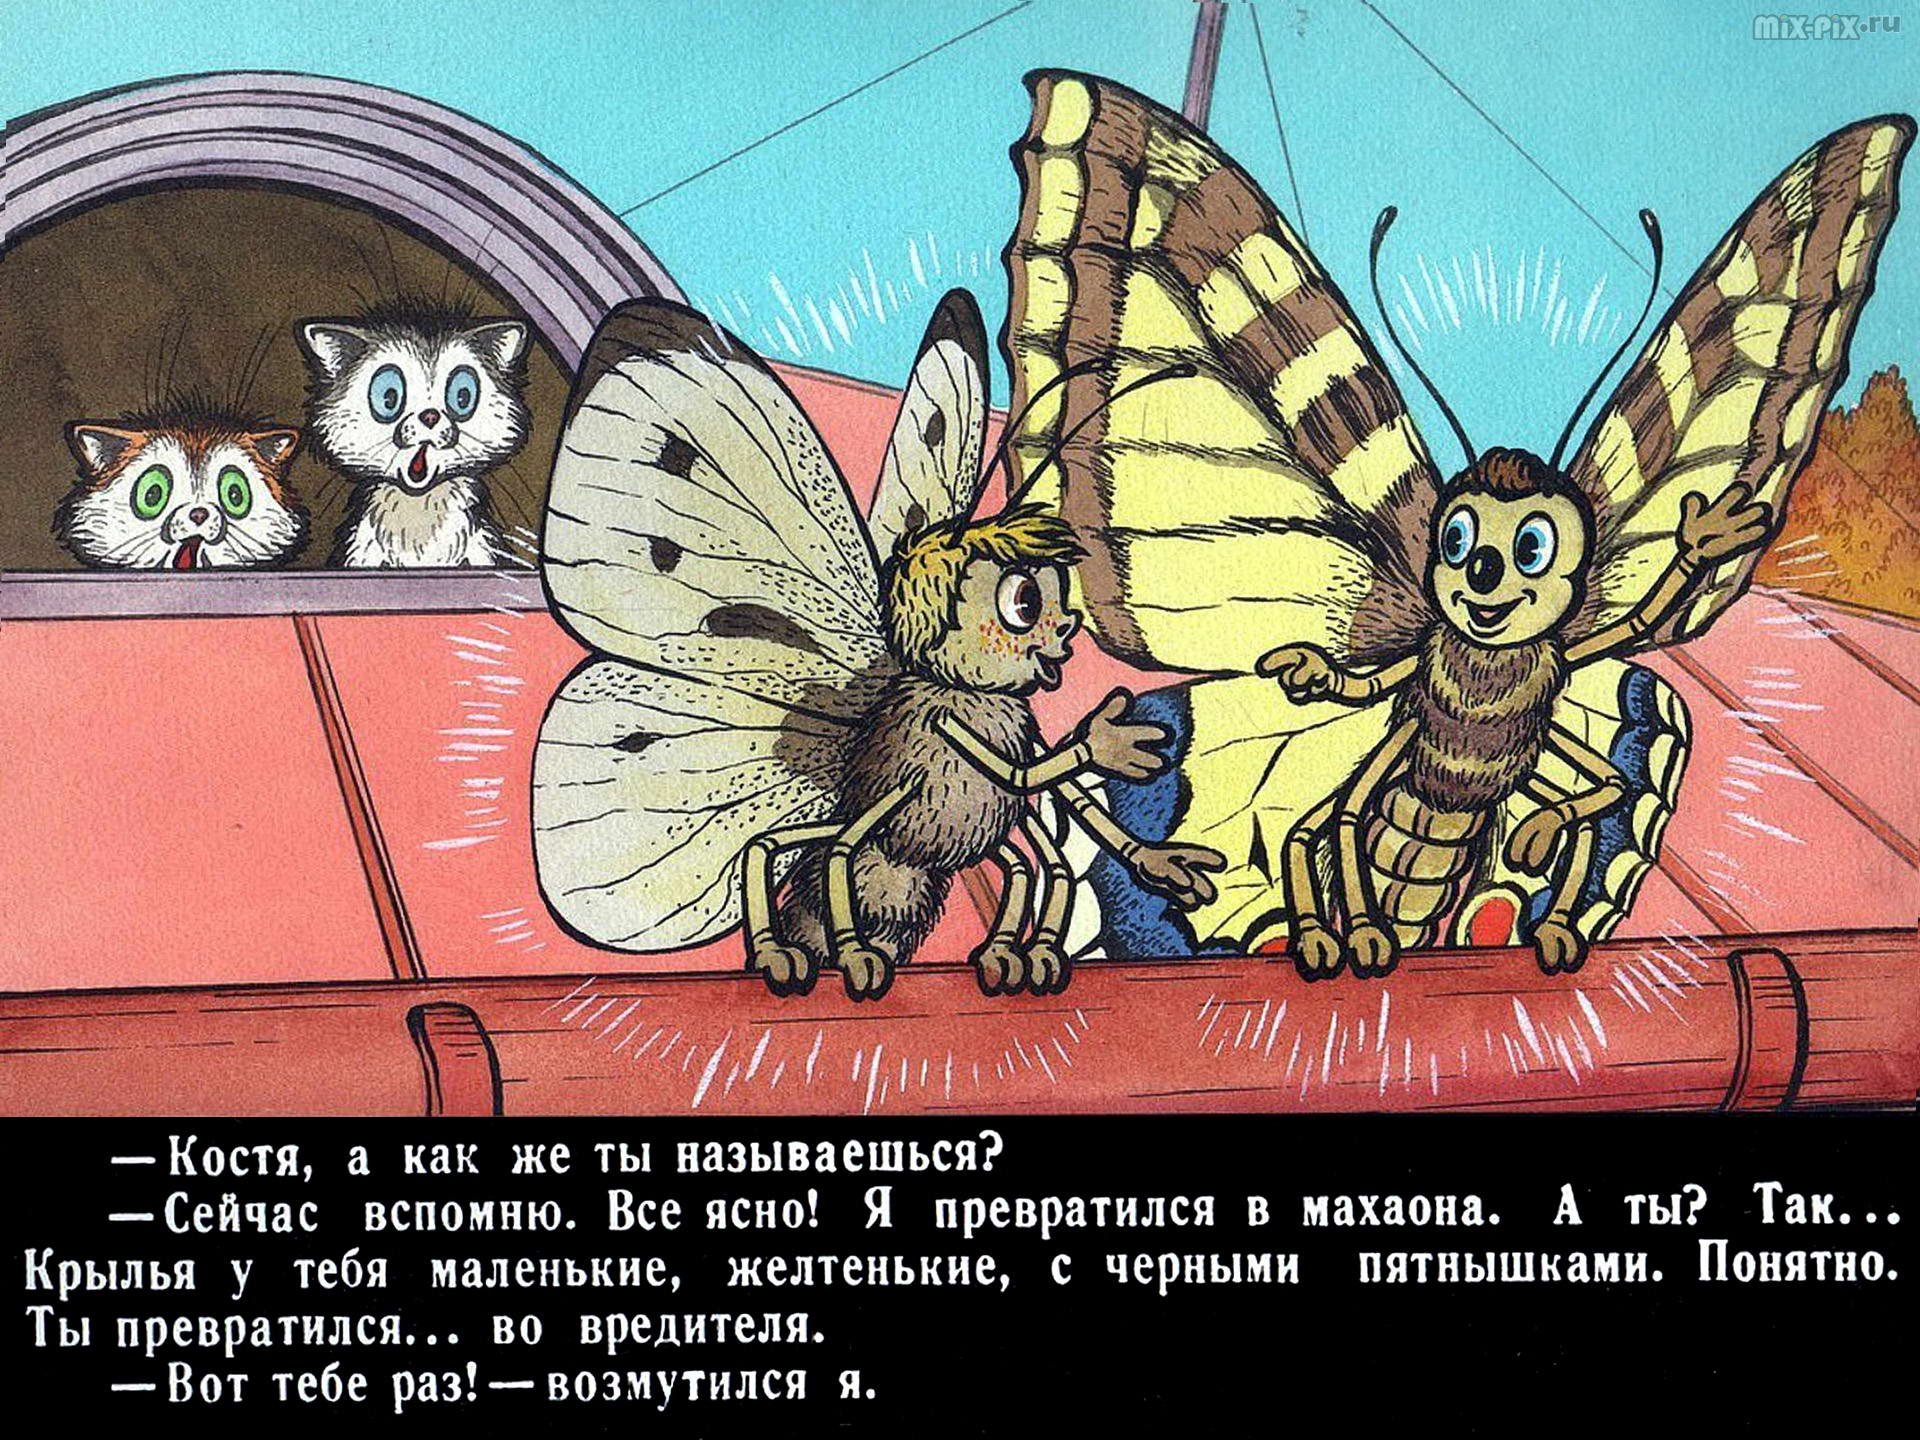 Иллюстрация к рассказу Баранкин будь человеком